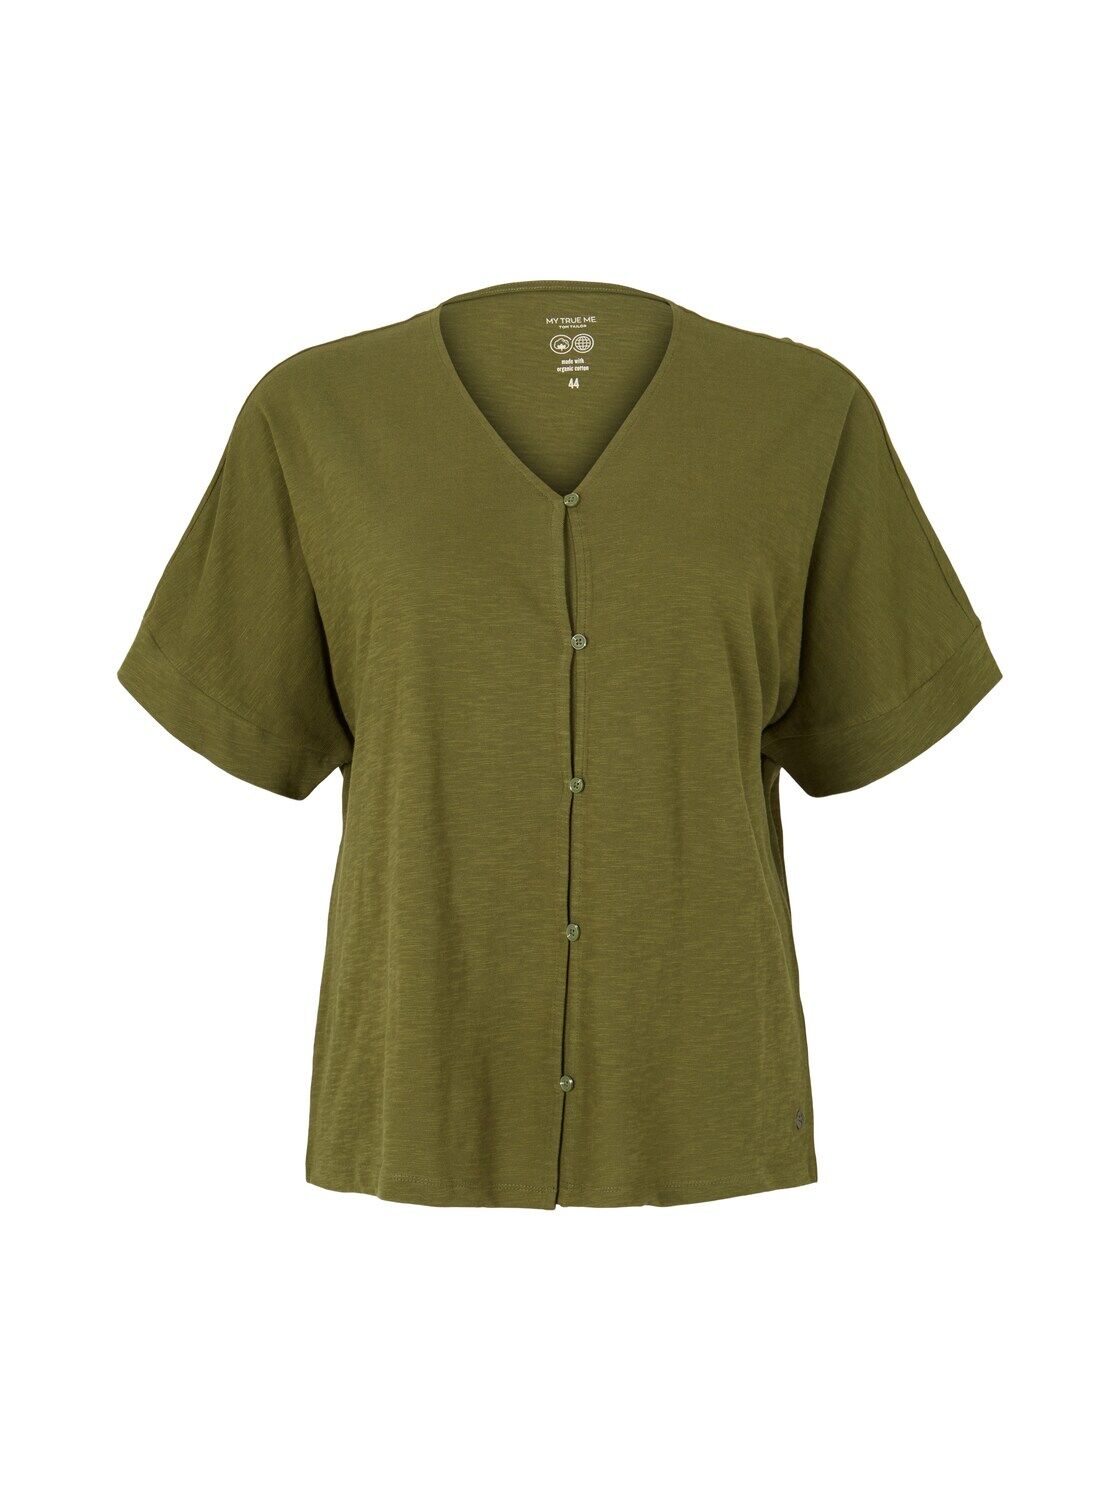 TOM TAILOR Damen Plus - T-Shirt mit Knopfleiste, grün, Gr. 54, baumwolle